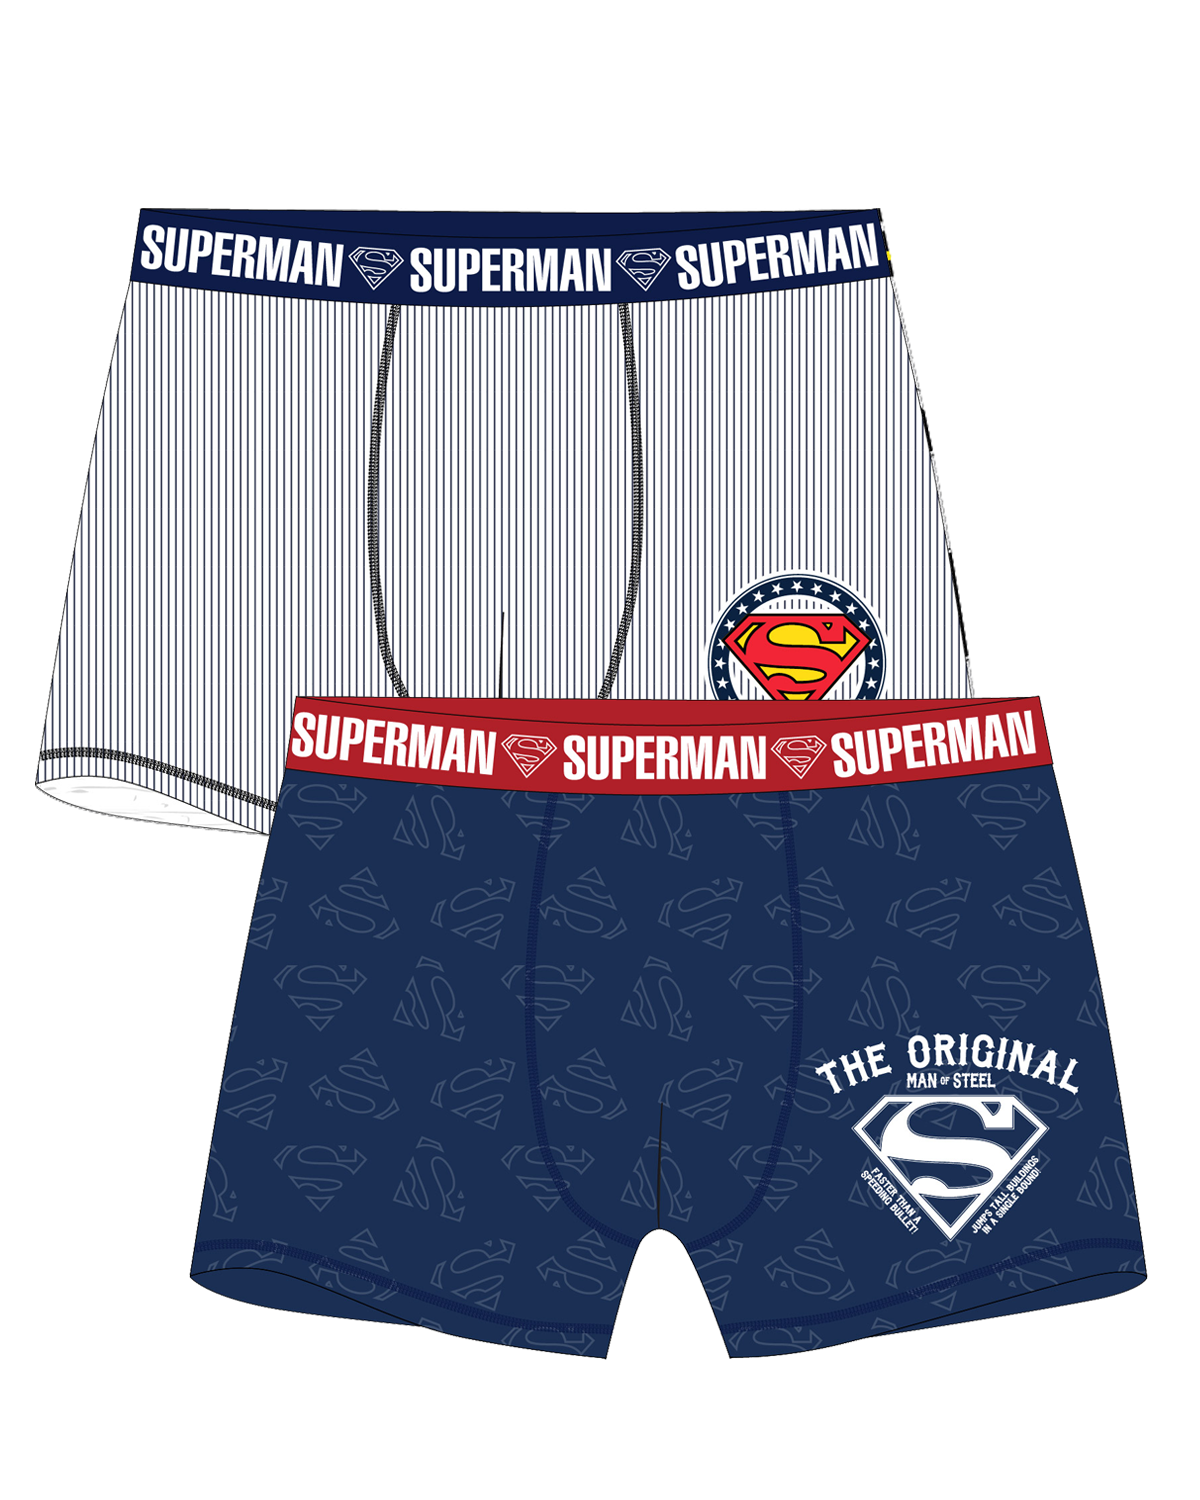 superman-licence Pánské boxerky - Superman 5333378, proužek / tmavě modrá Barva: Mix barev, Velikost: L